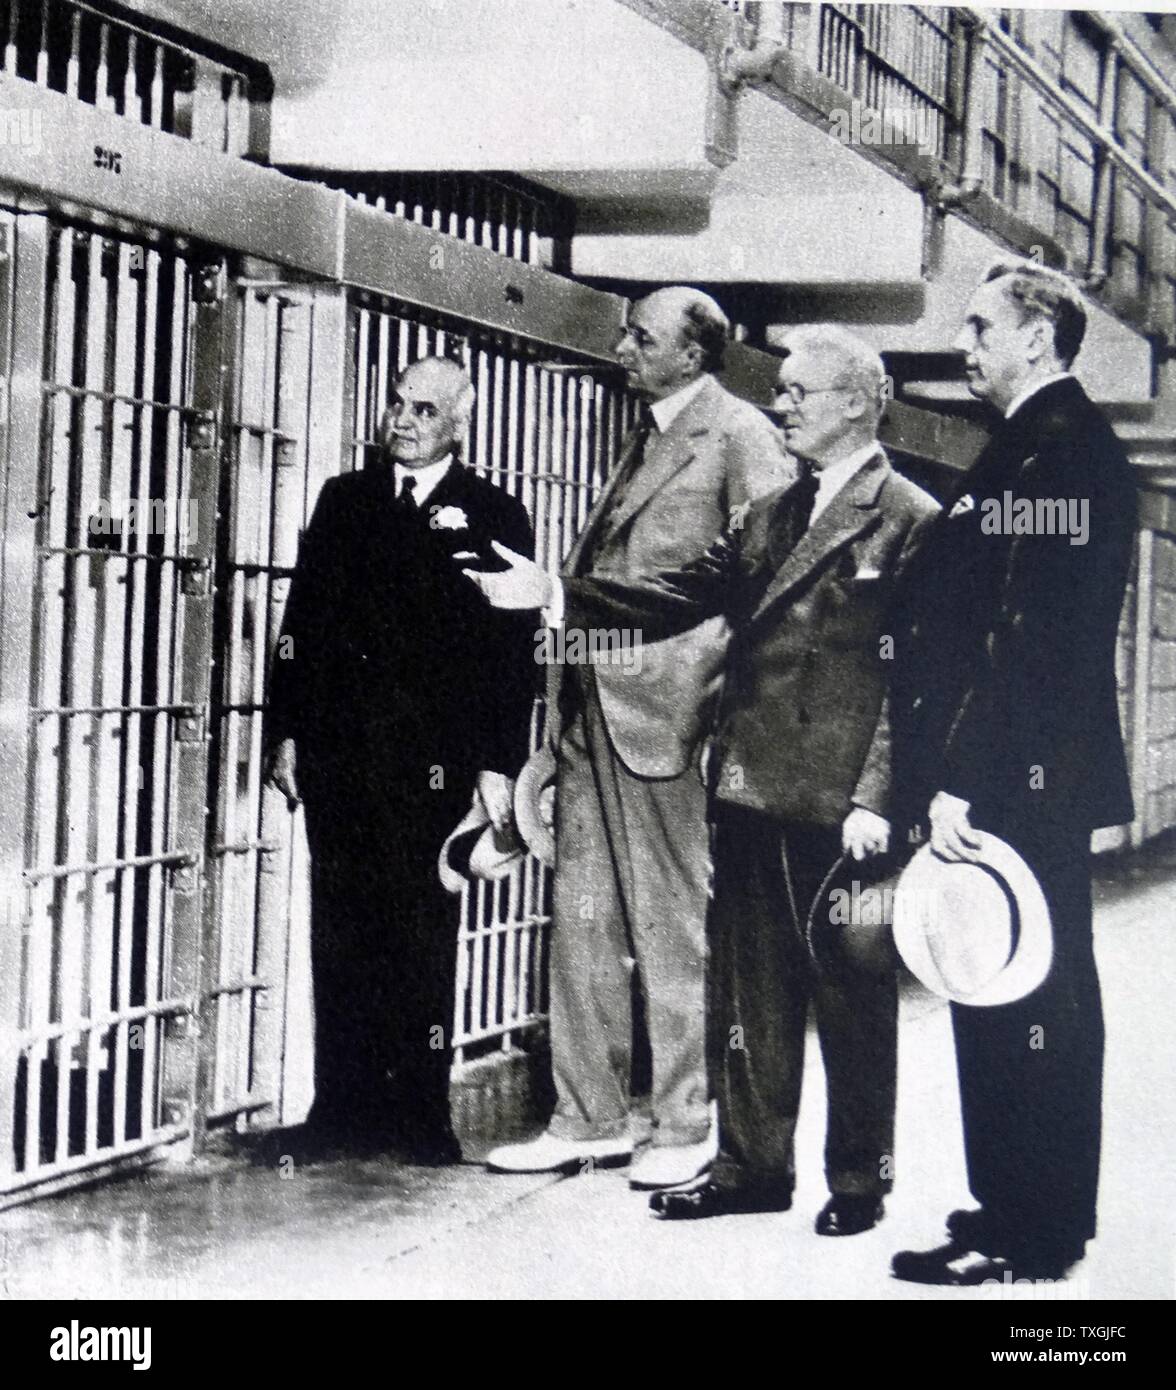 Photographic print die Gefängniszelle von Al Capone (1899-1947) einen amerikanischen Gangster während der Zeit der Prohibition. Vom 20. Jahrhundert Stockfoto